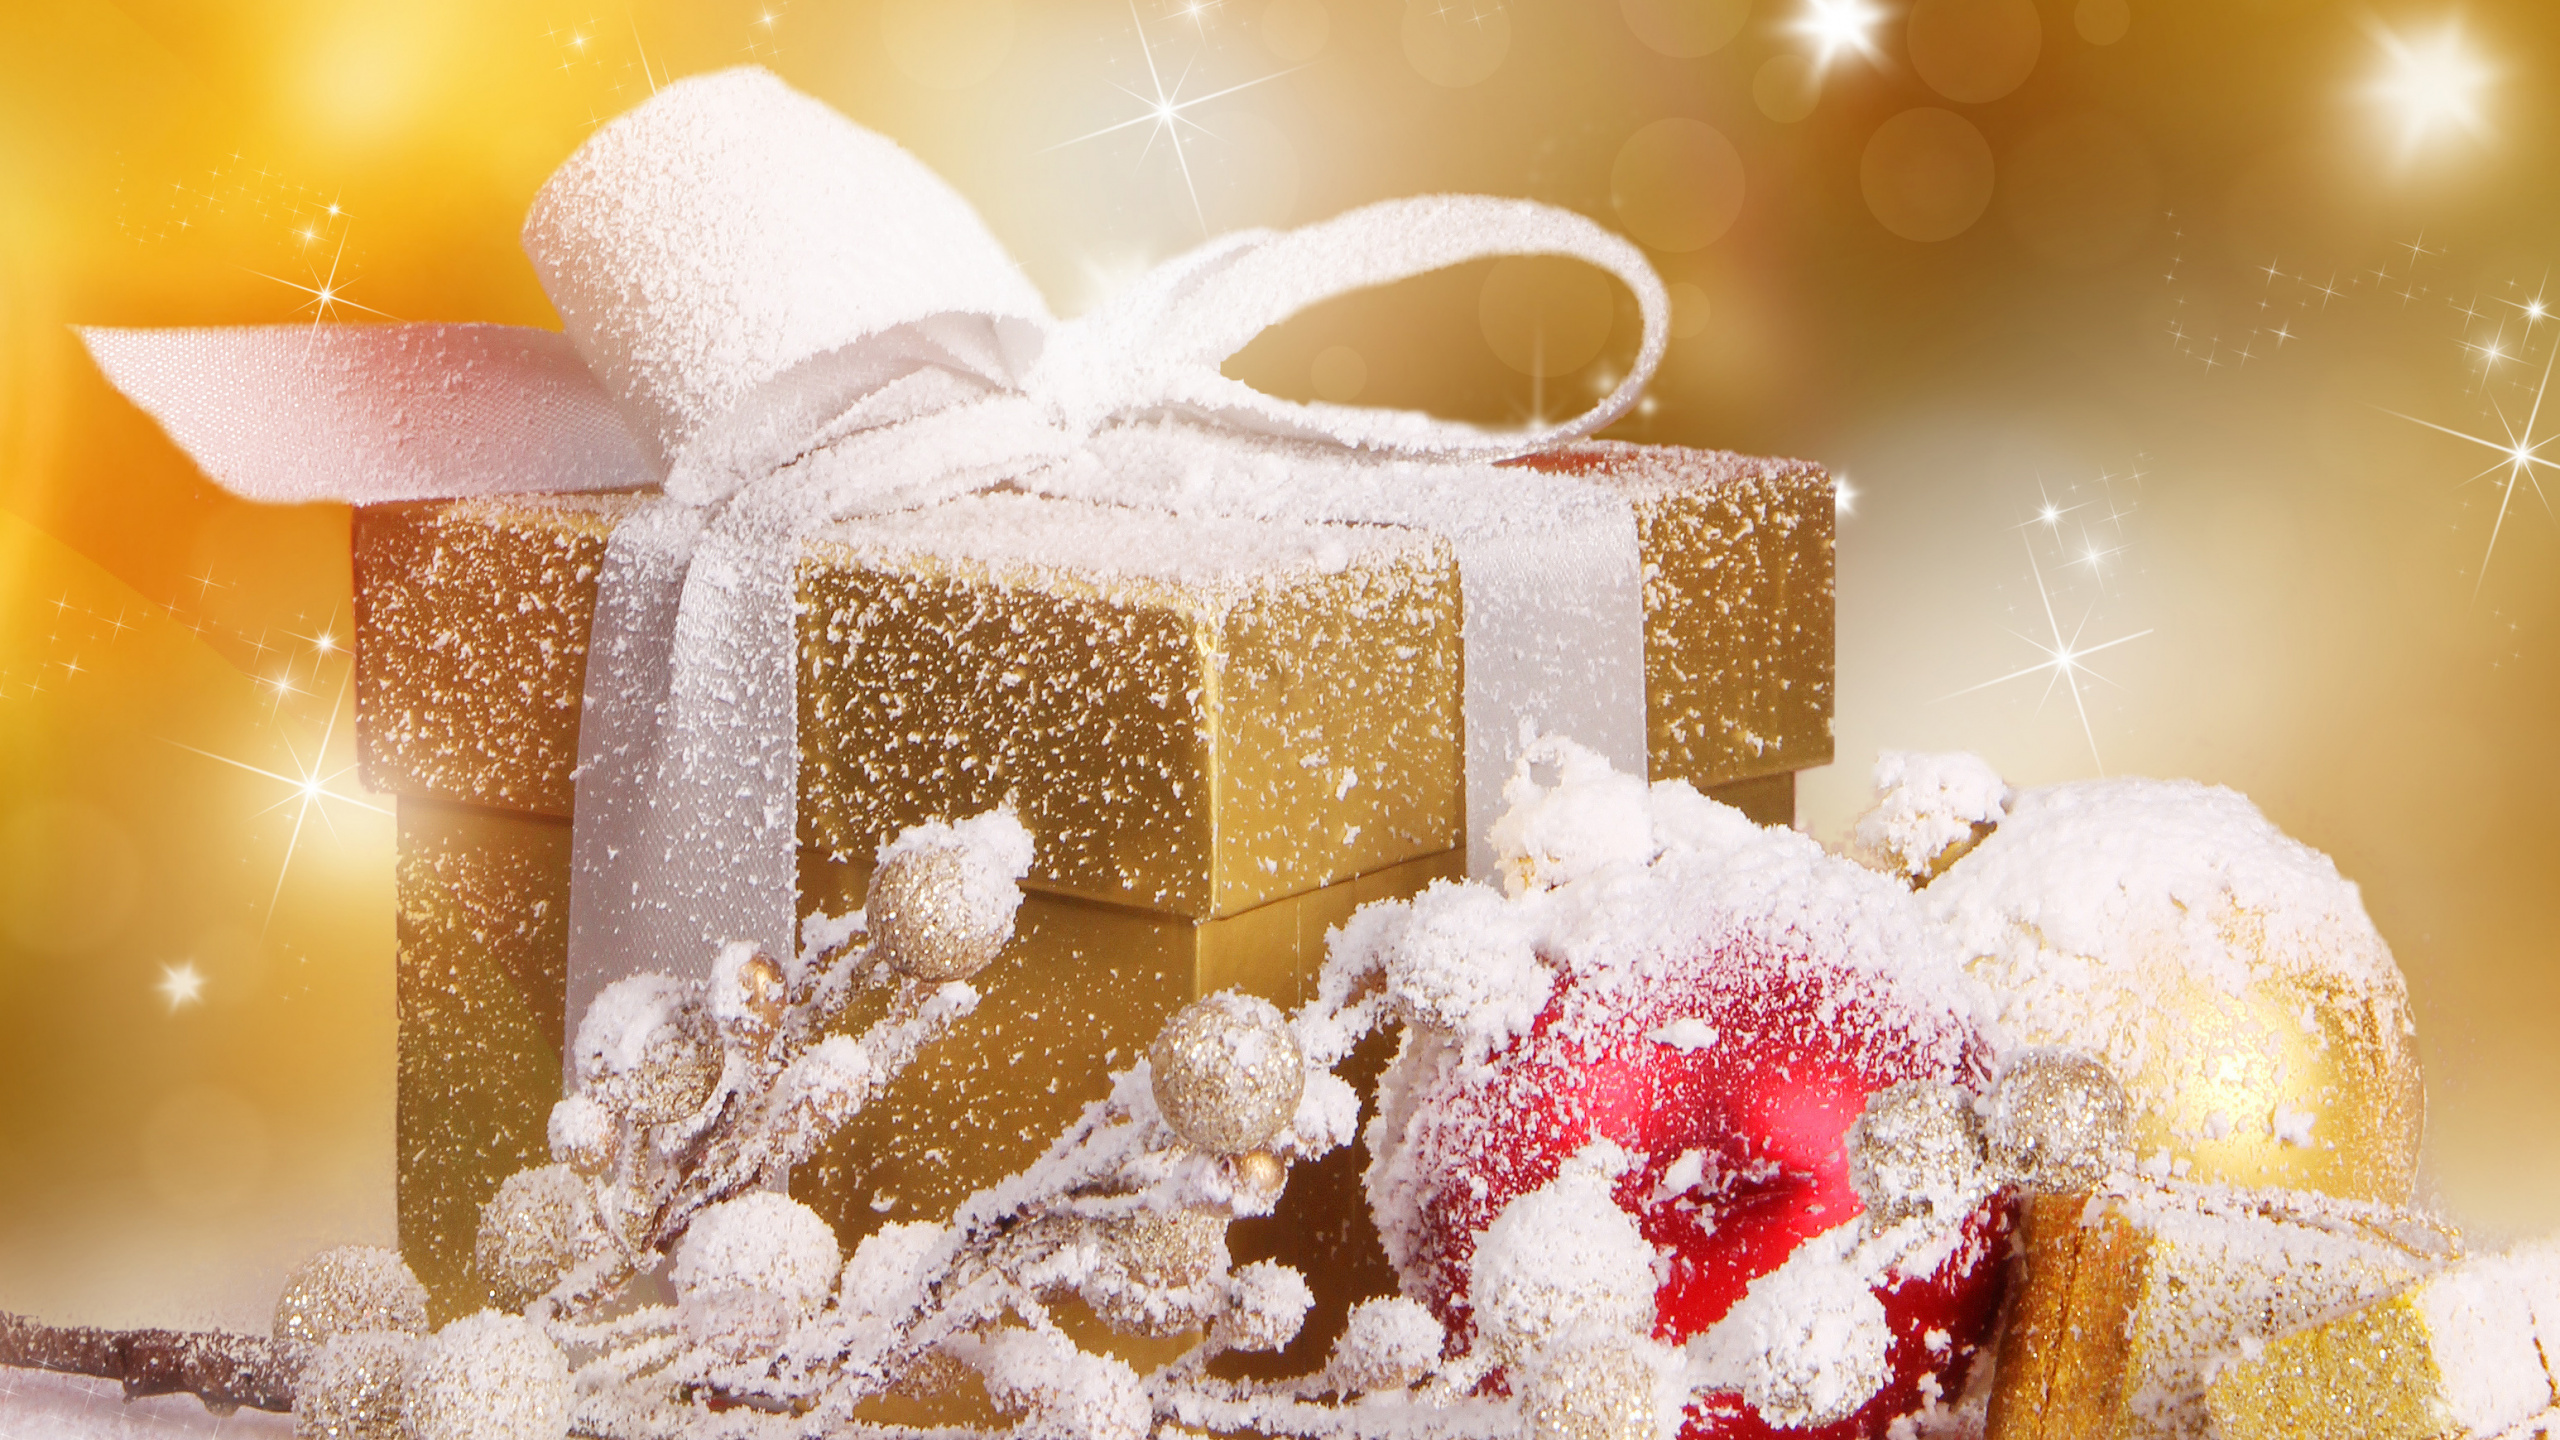 礼物, 圣诞节礼物, 圣诞节那天, 食品, 圣诞节 壁纸 2560x1440 允许